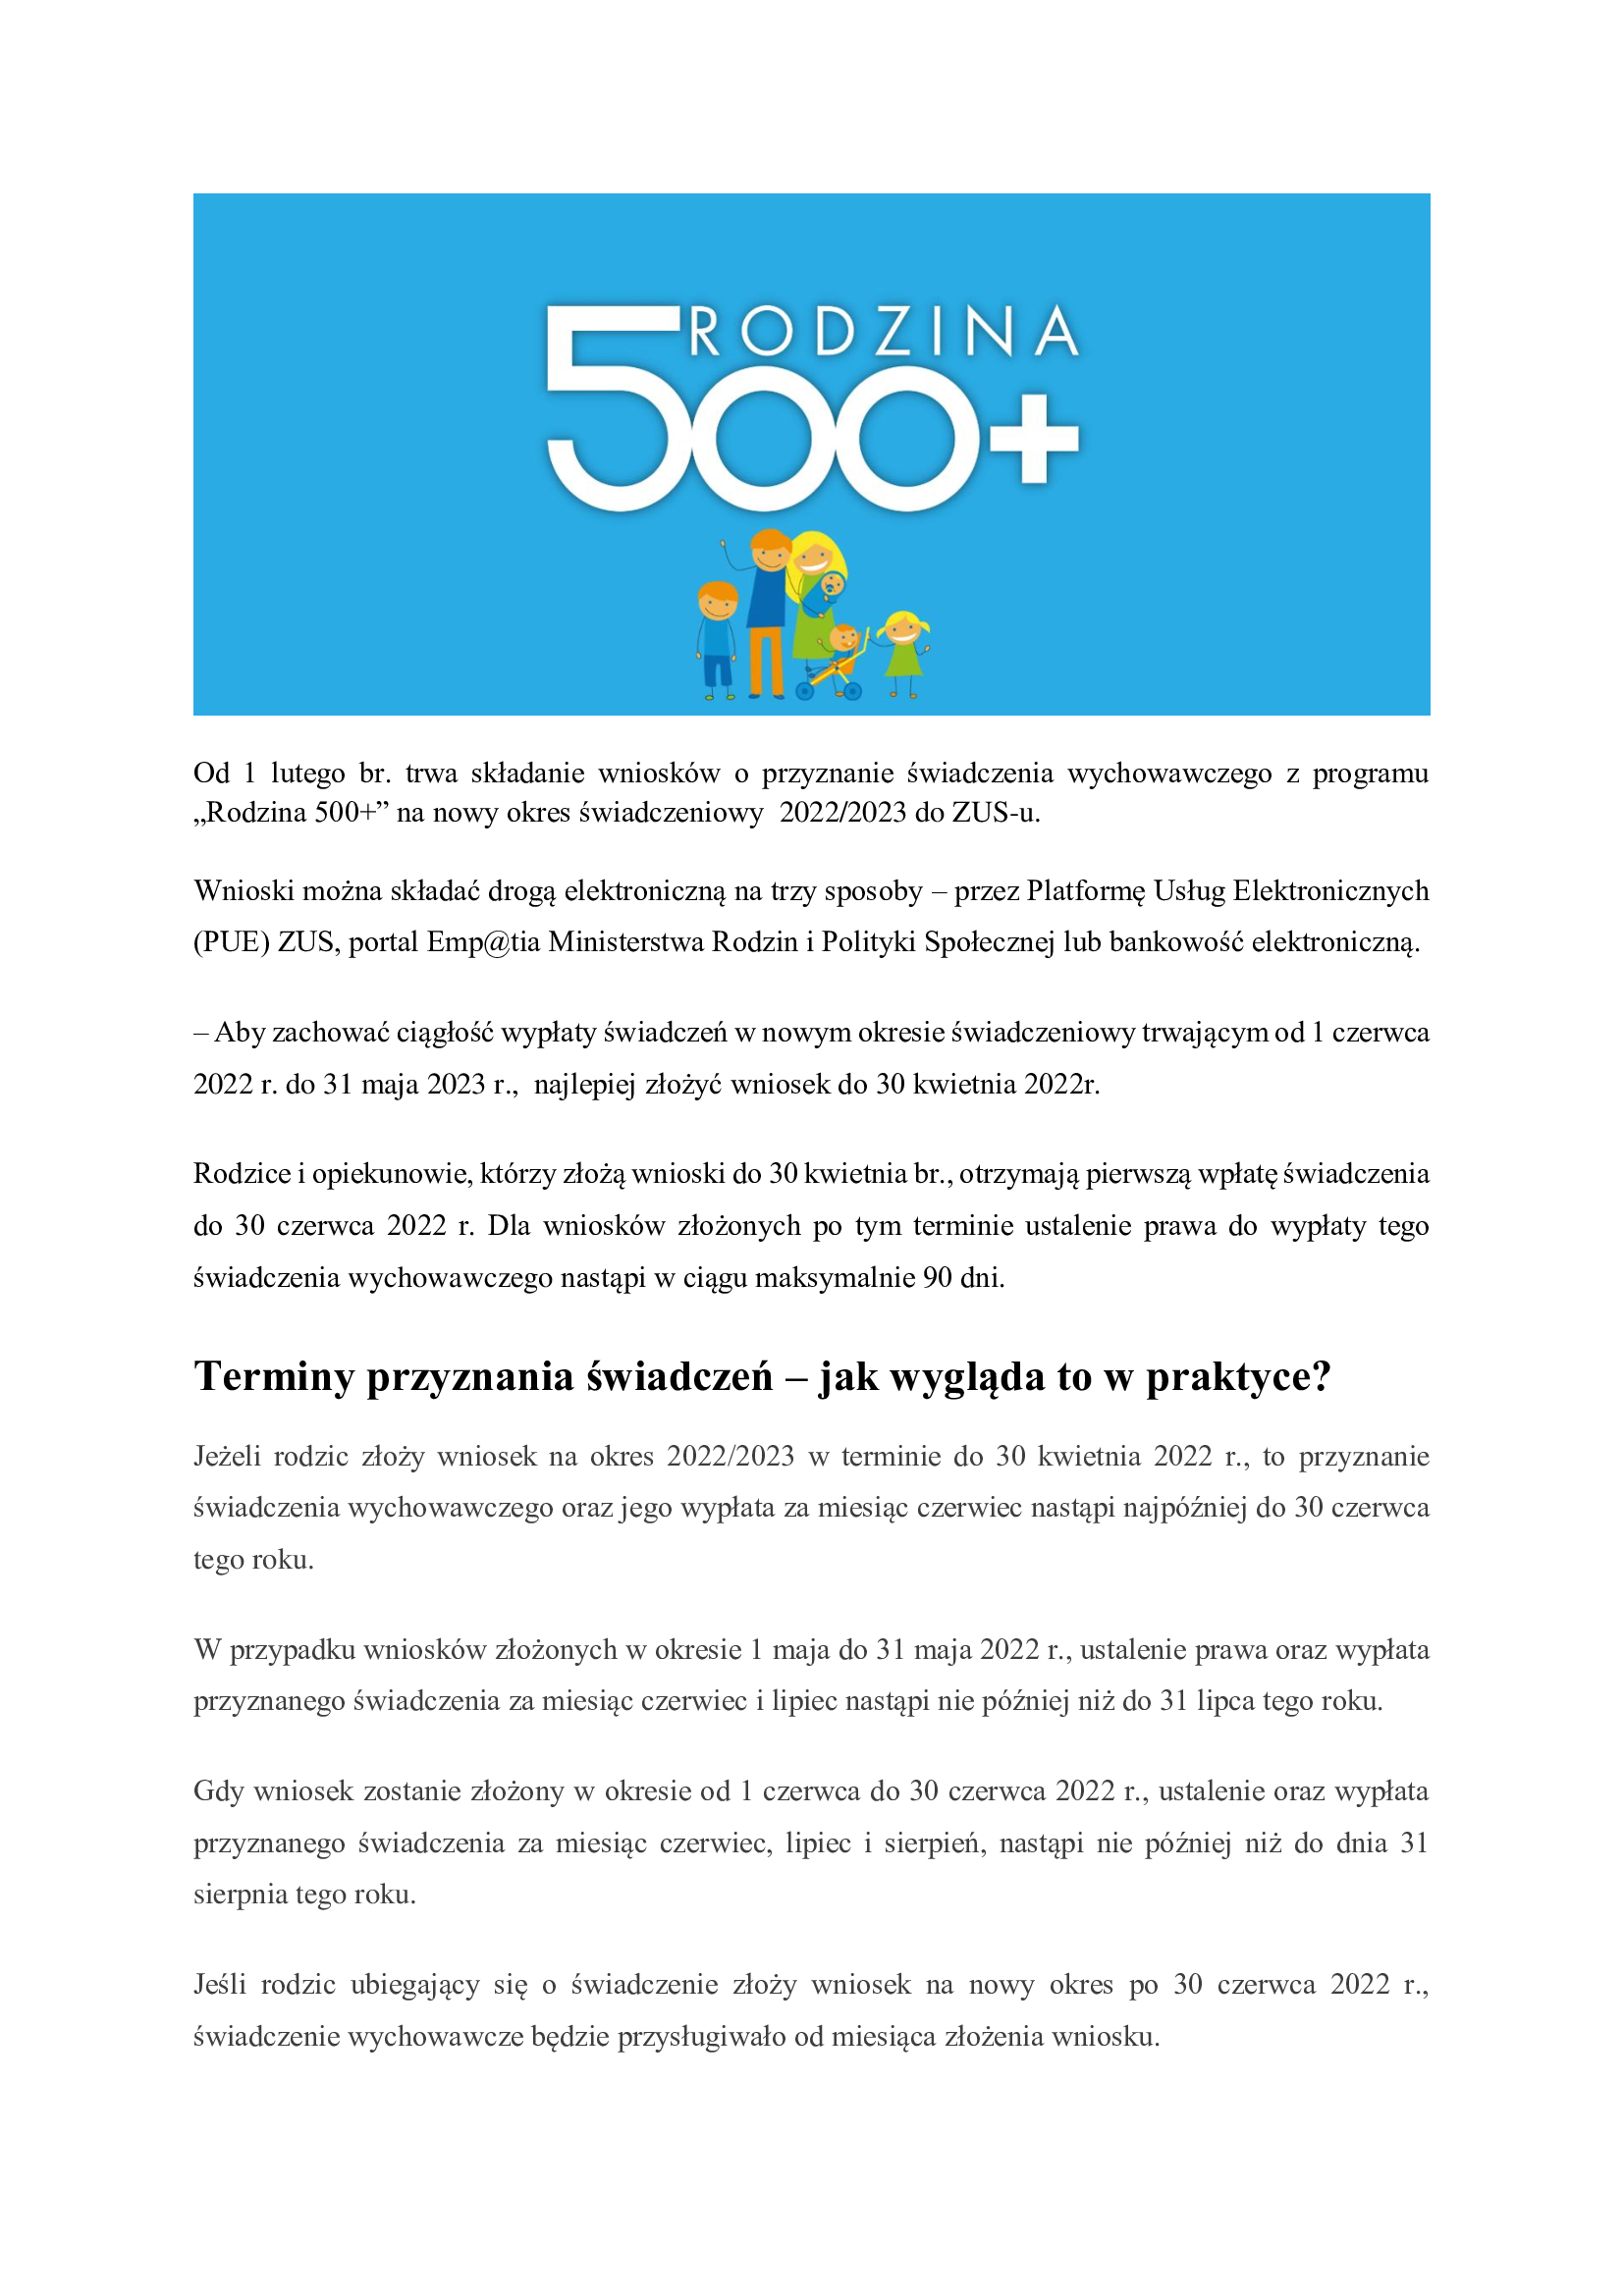 „Rodzina 500+” nowy okres świadczeniowy  2022/2023 do ZUS-u., Gminny Ośrodek Pomocy Społecznej w Łopusznie